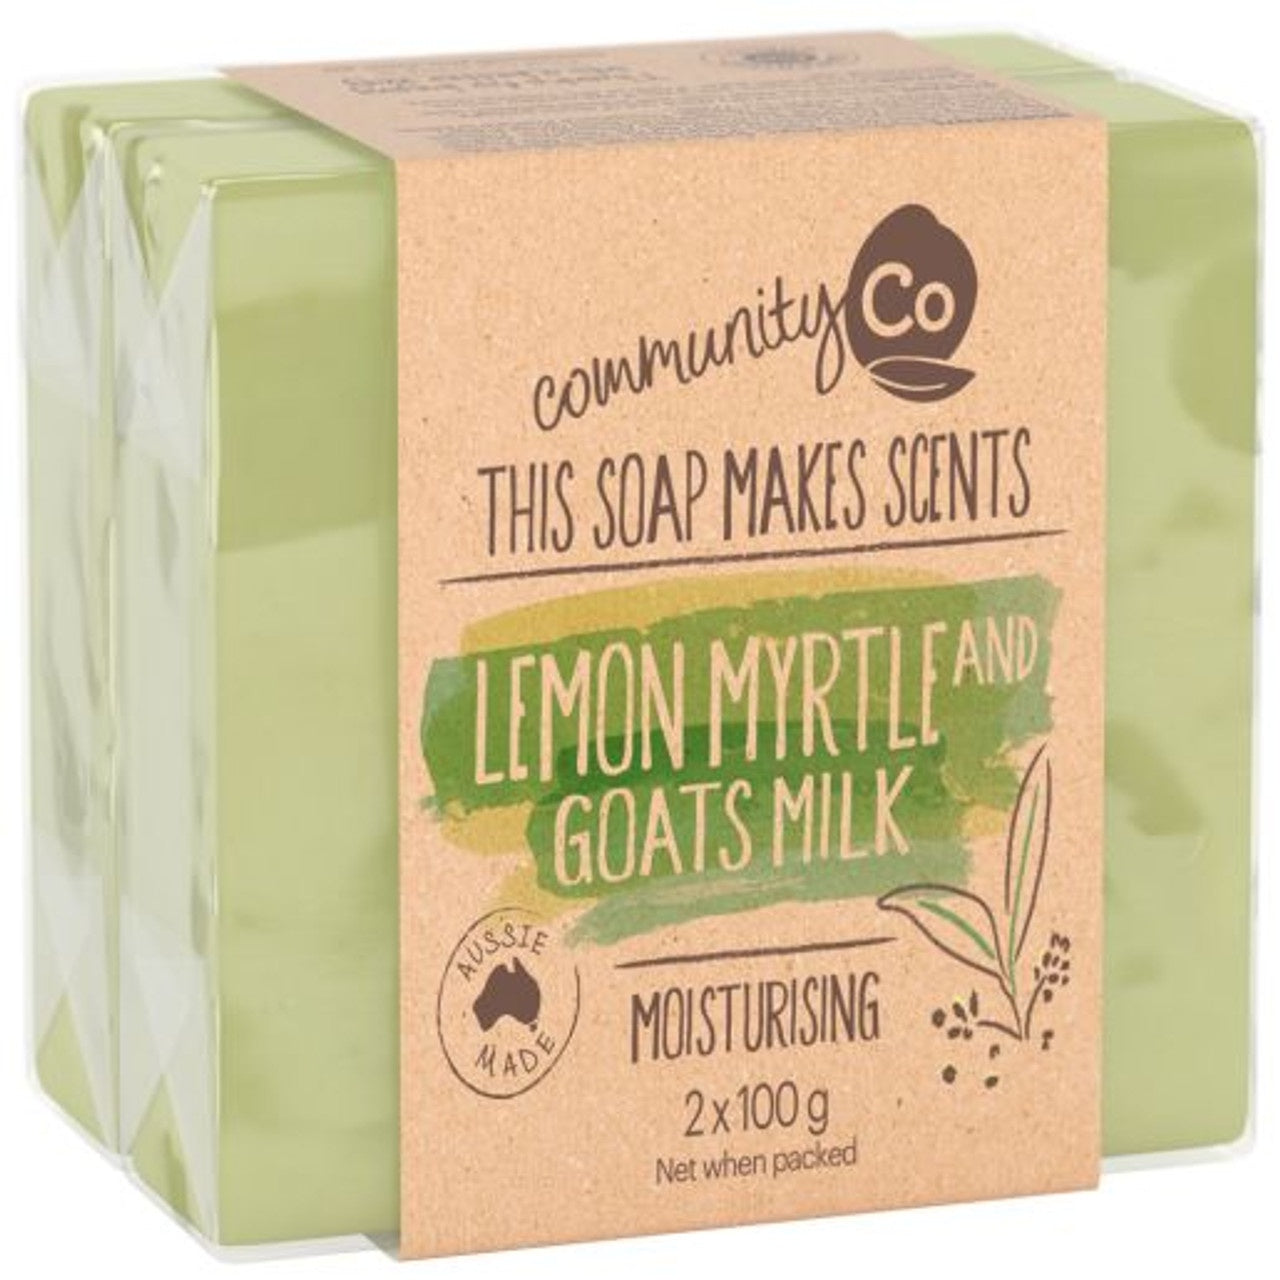 Community Co Lemon Myrtle & Goats Milk Soap 2pk x100g